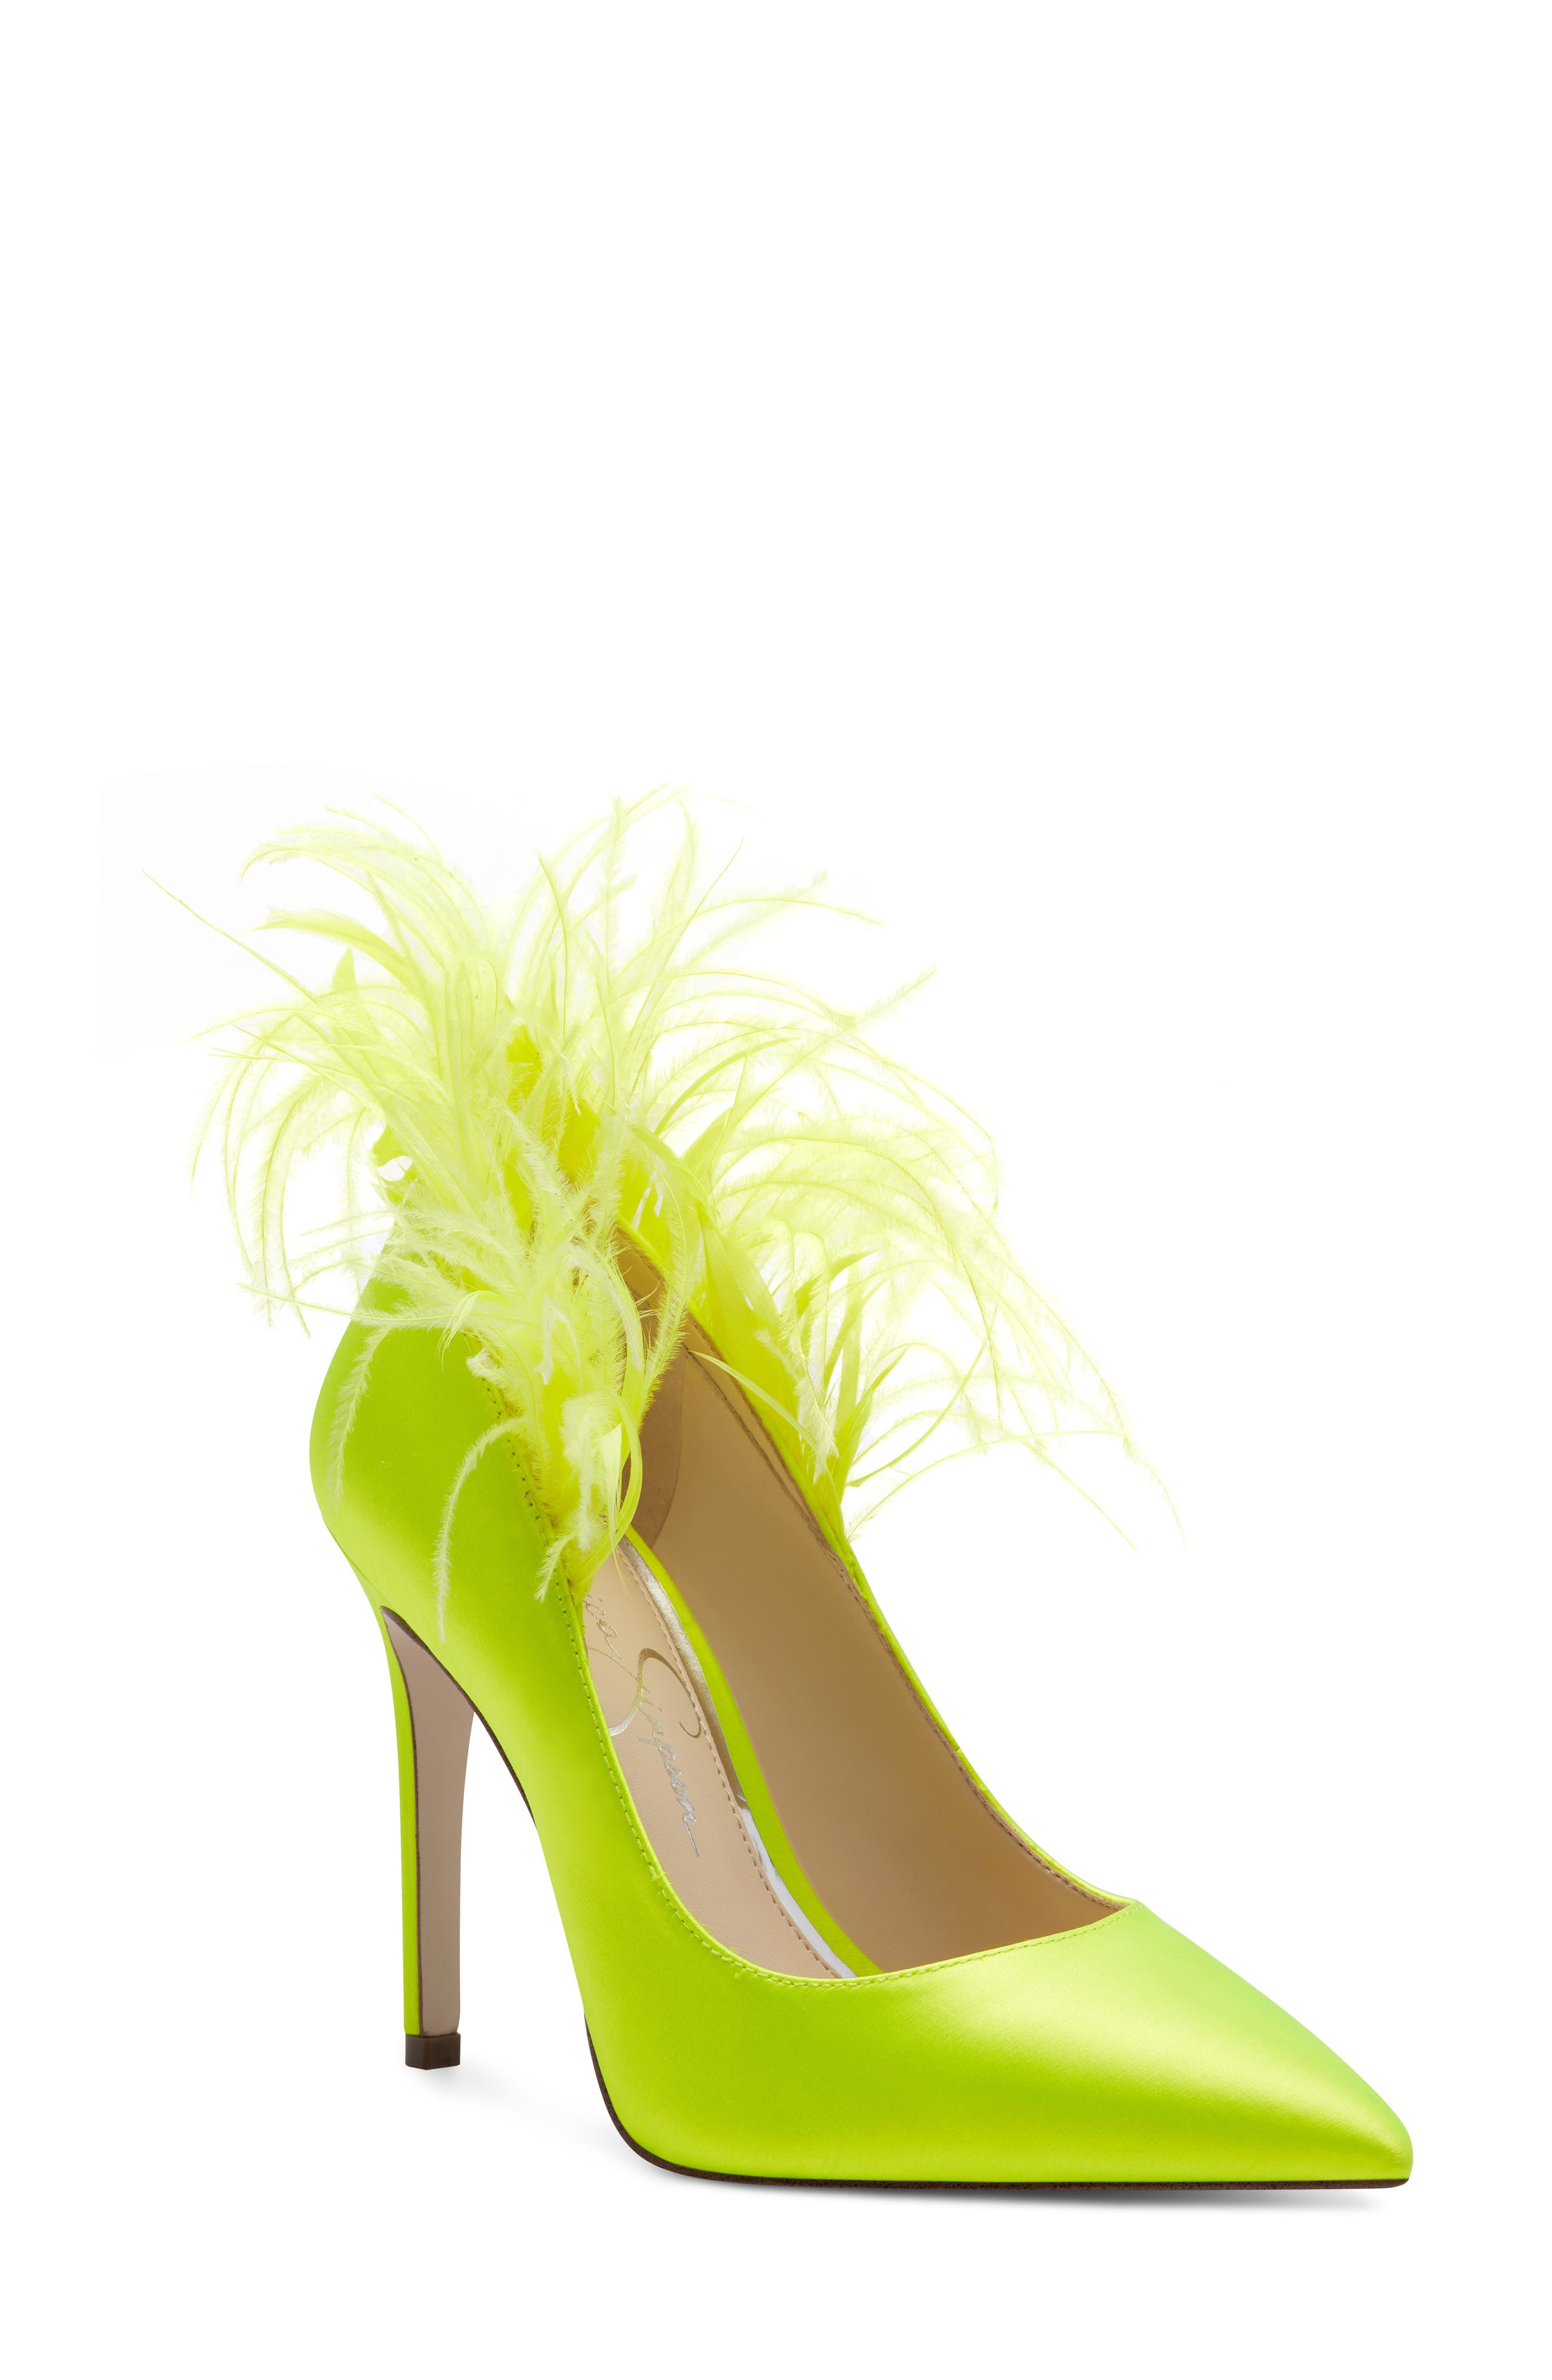 highlighter green heels